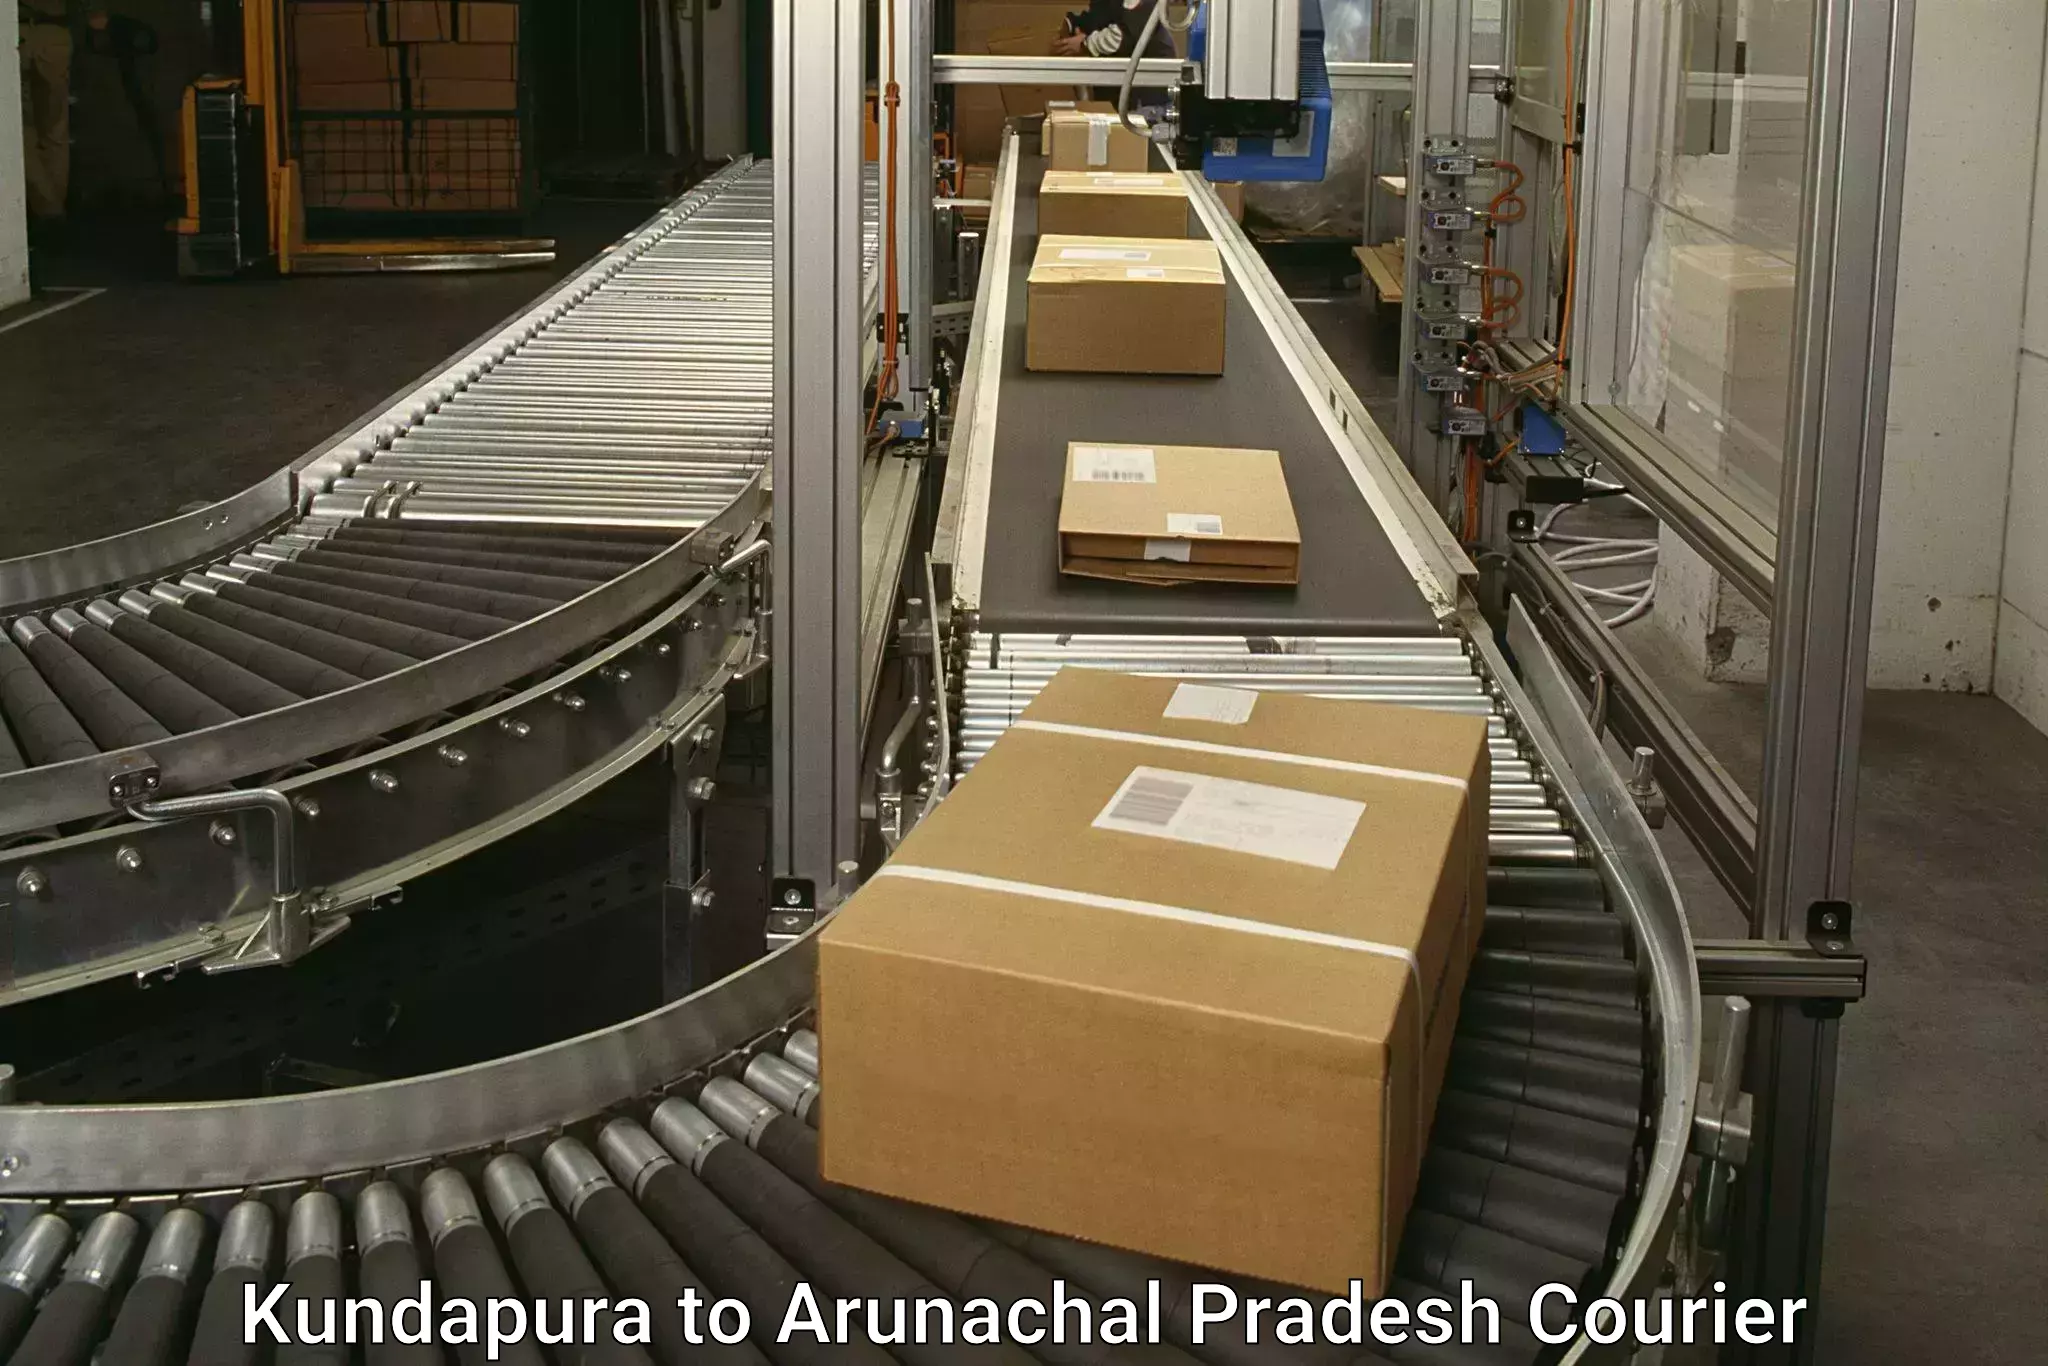 Efficient parcel transport Kundapura to Kharsang